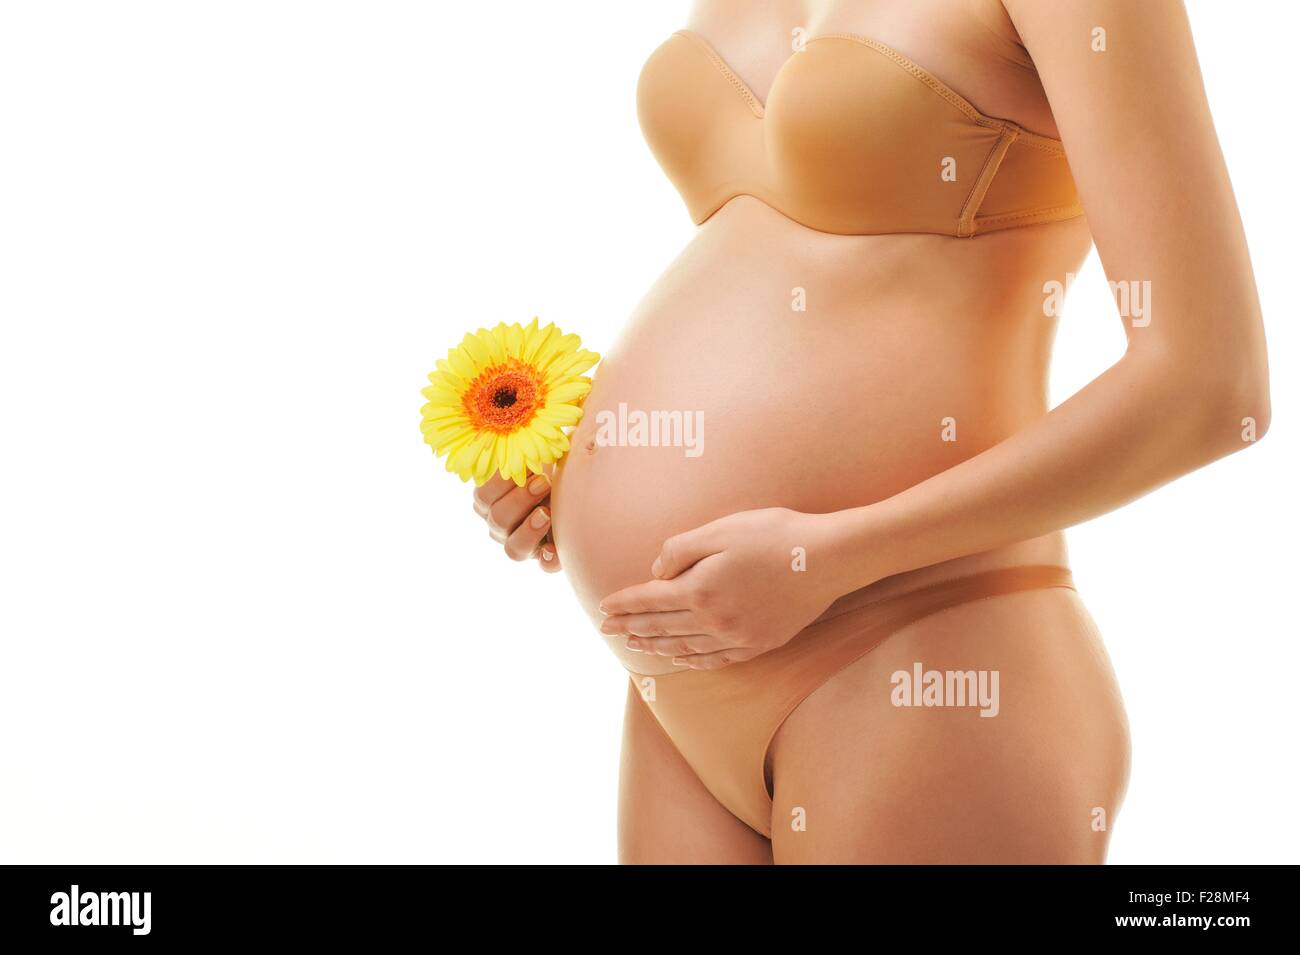 беременности цвет груди фото 46